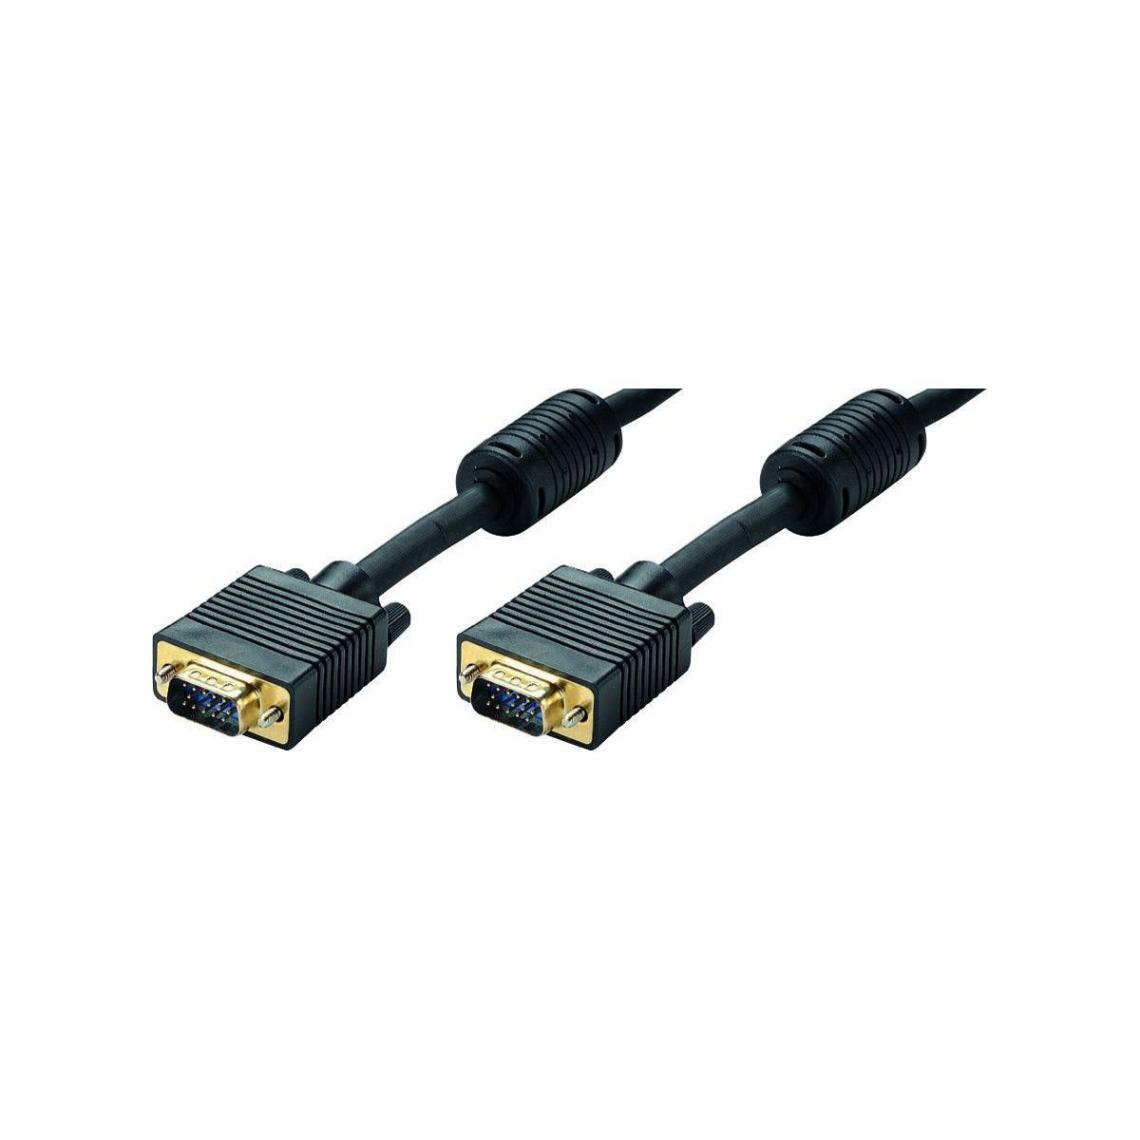 Itc - Accessoires Videoprojecteur Itc Erard Connect 7509 - accessoires cables meubles supports